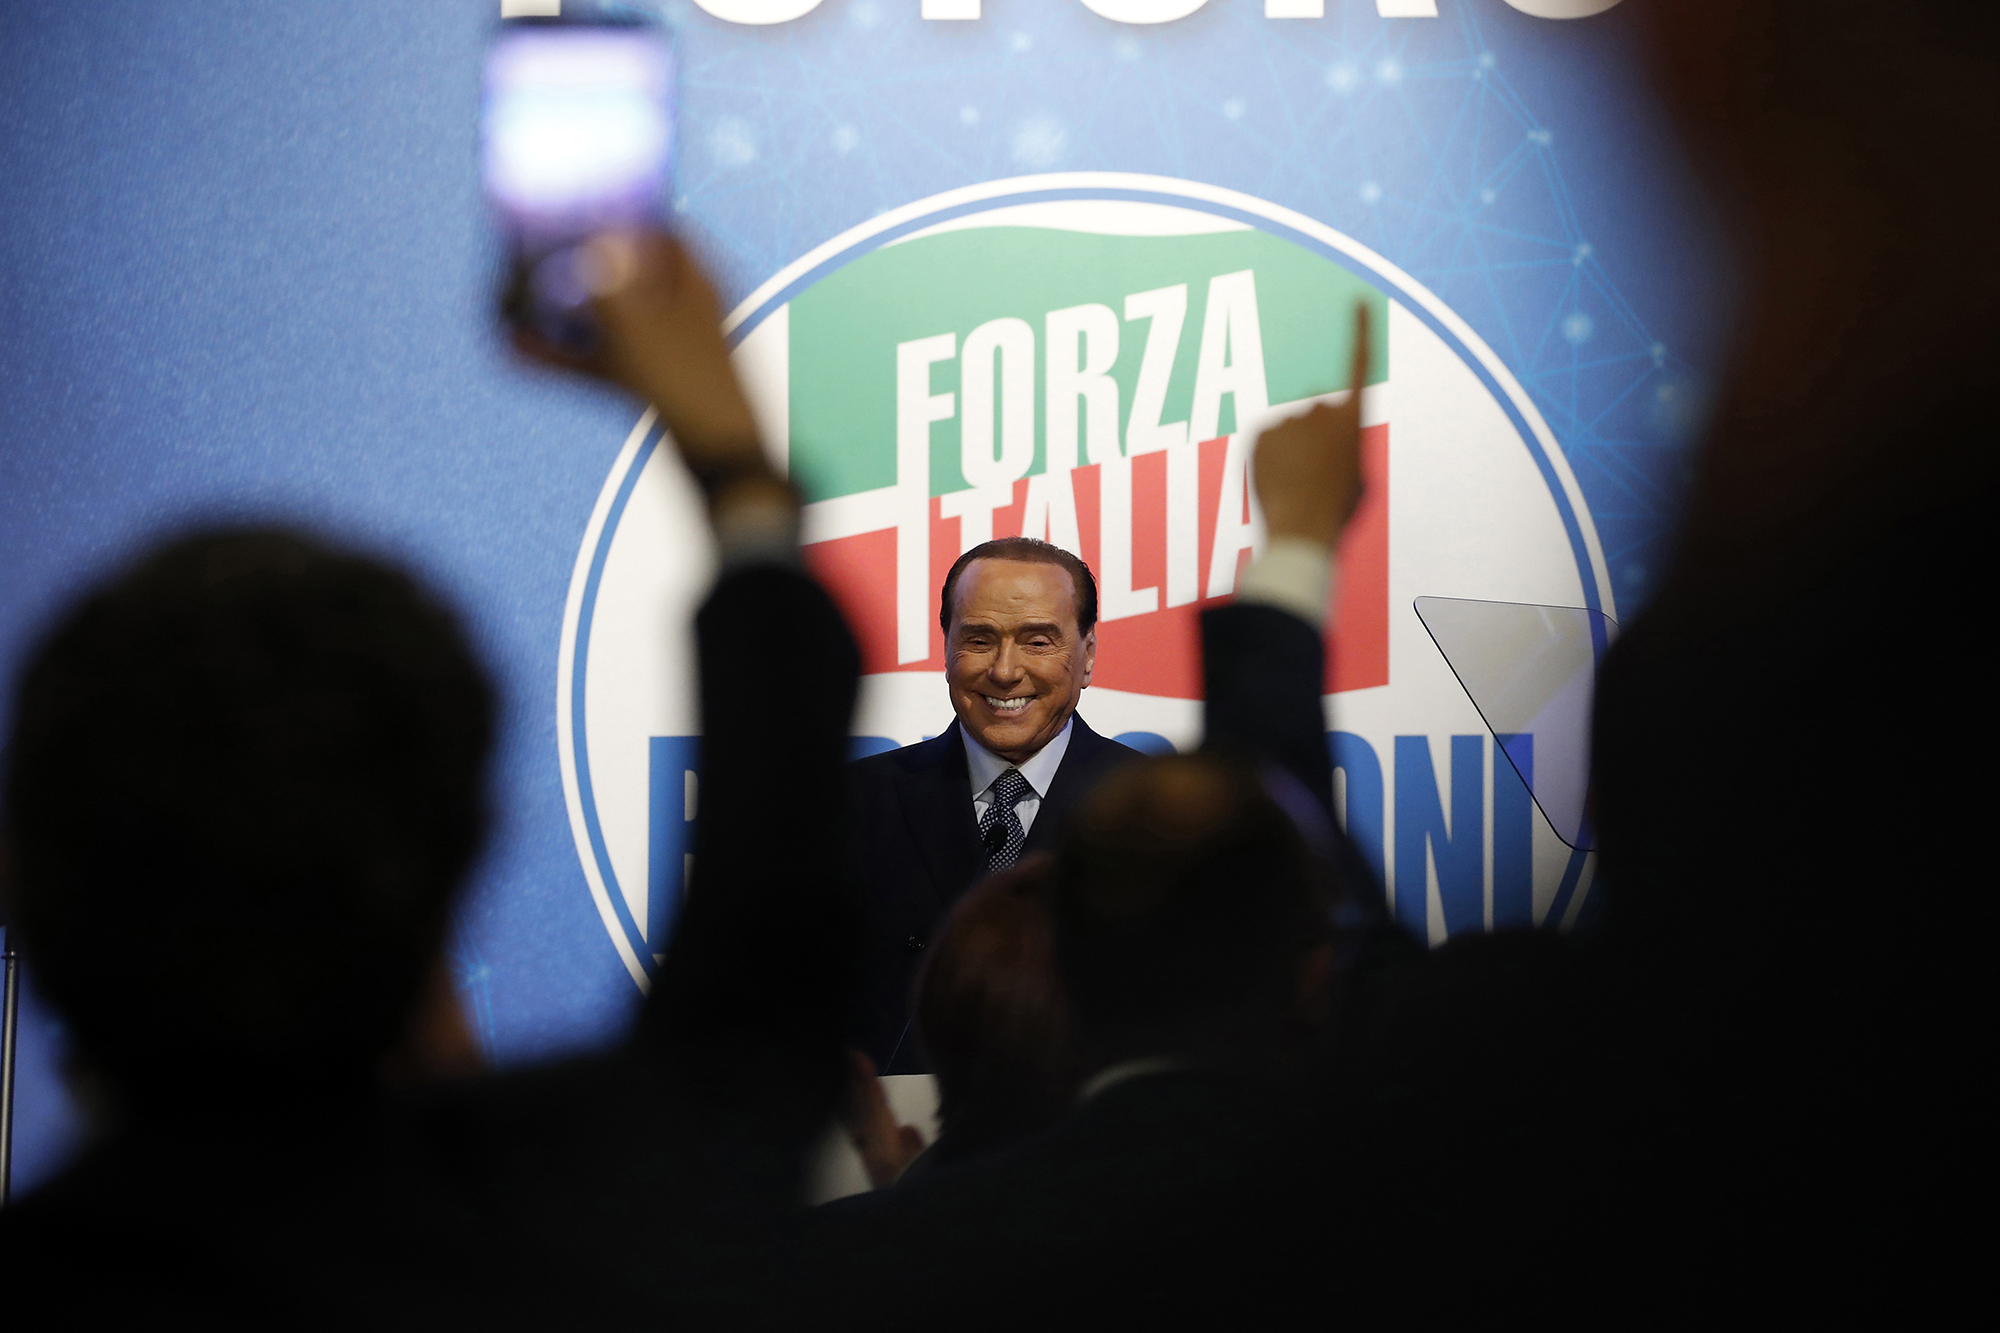 Italian politician Silvio Berlusconi speaks at the Forza Italia programmatic conference at the Parco dei Principi Hotel in Rome, Italy, on April 9, 2022.